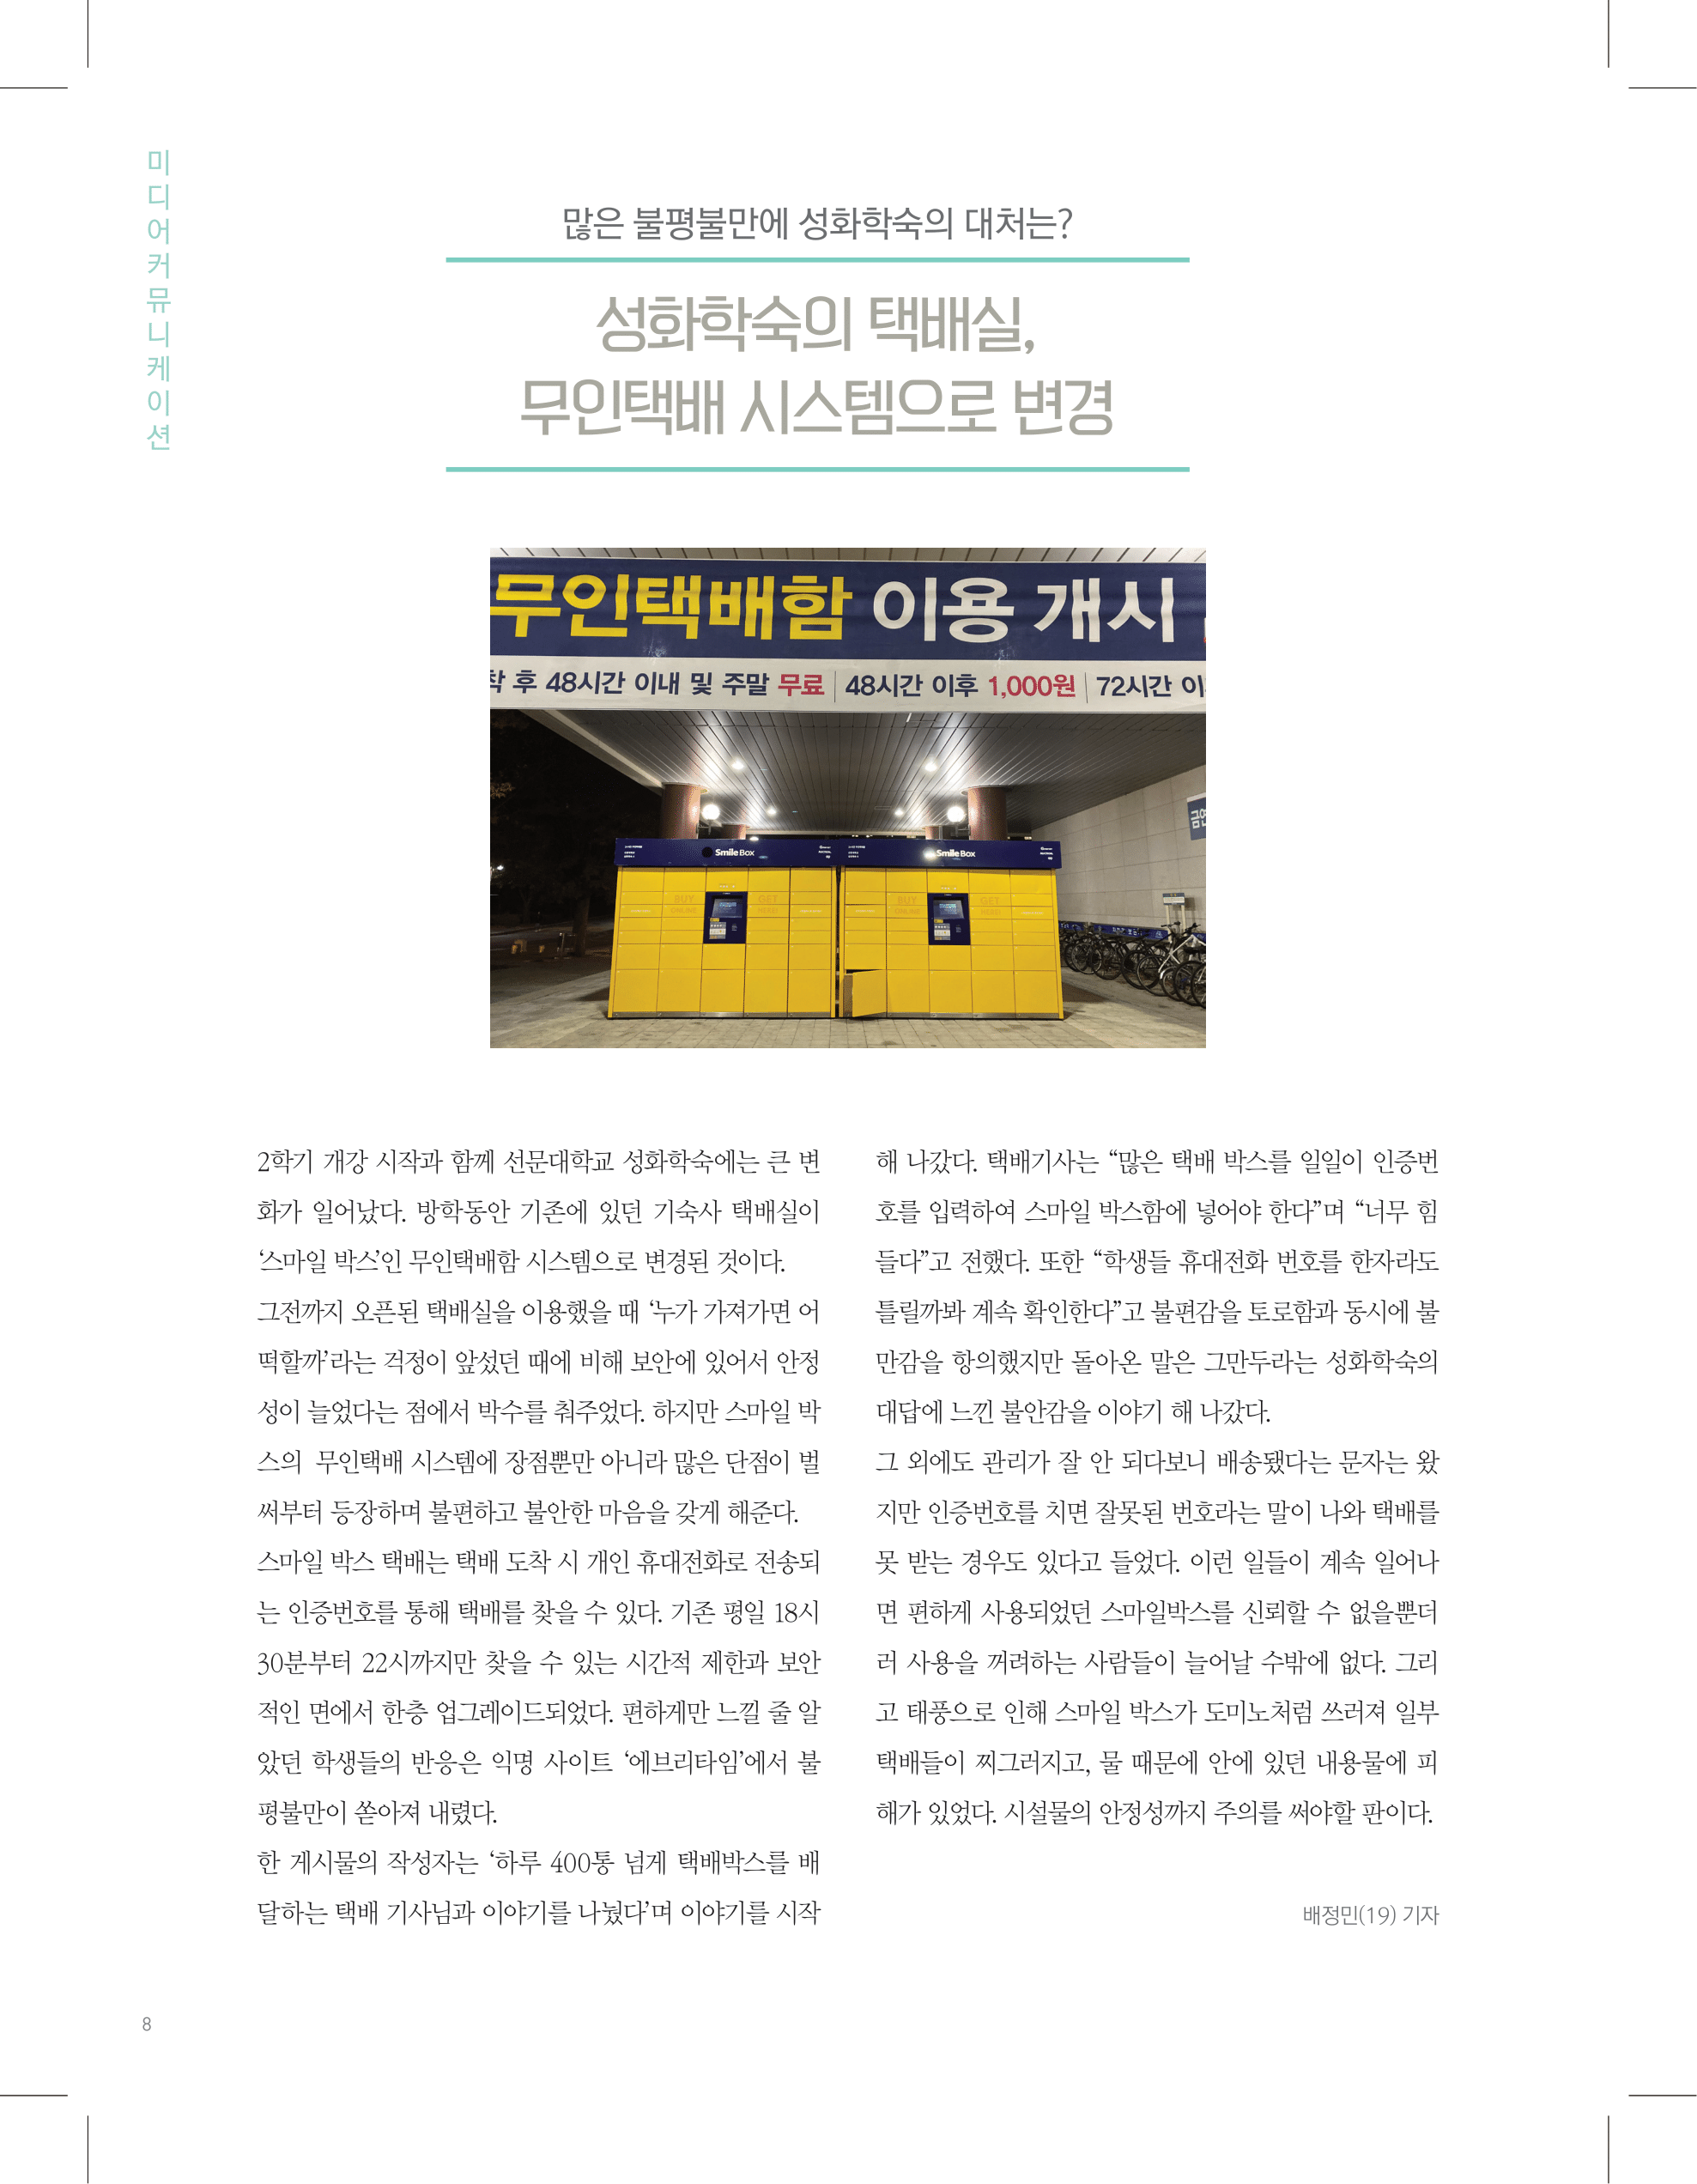 뜻새김 신문 74호 8